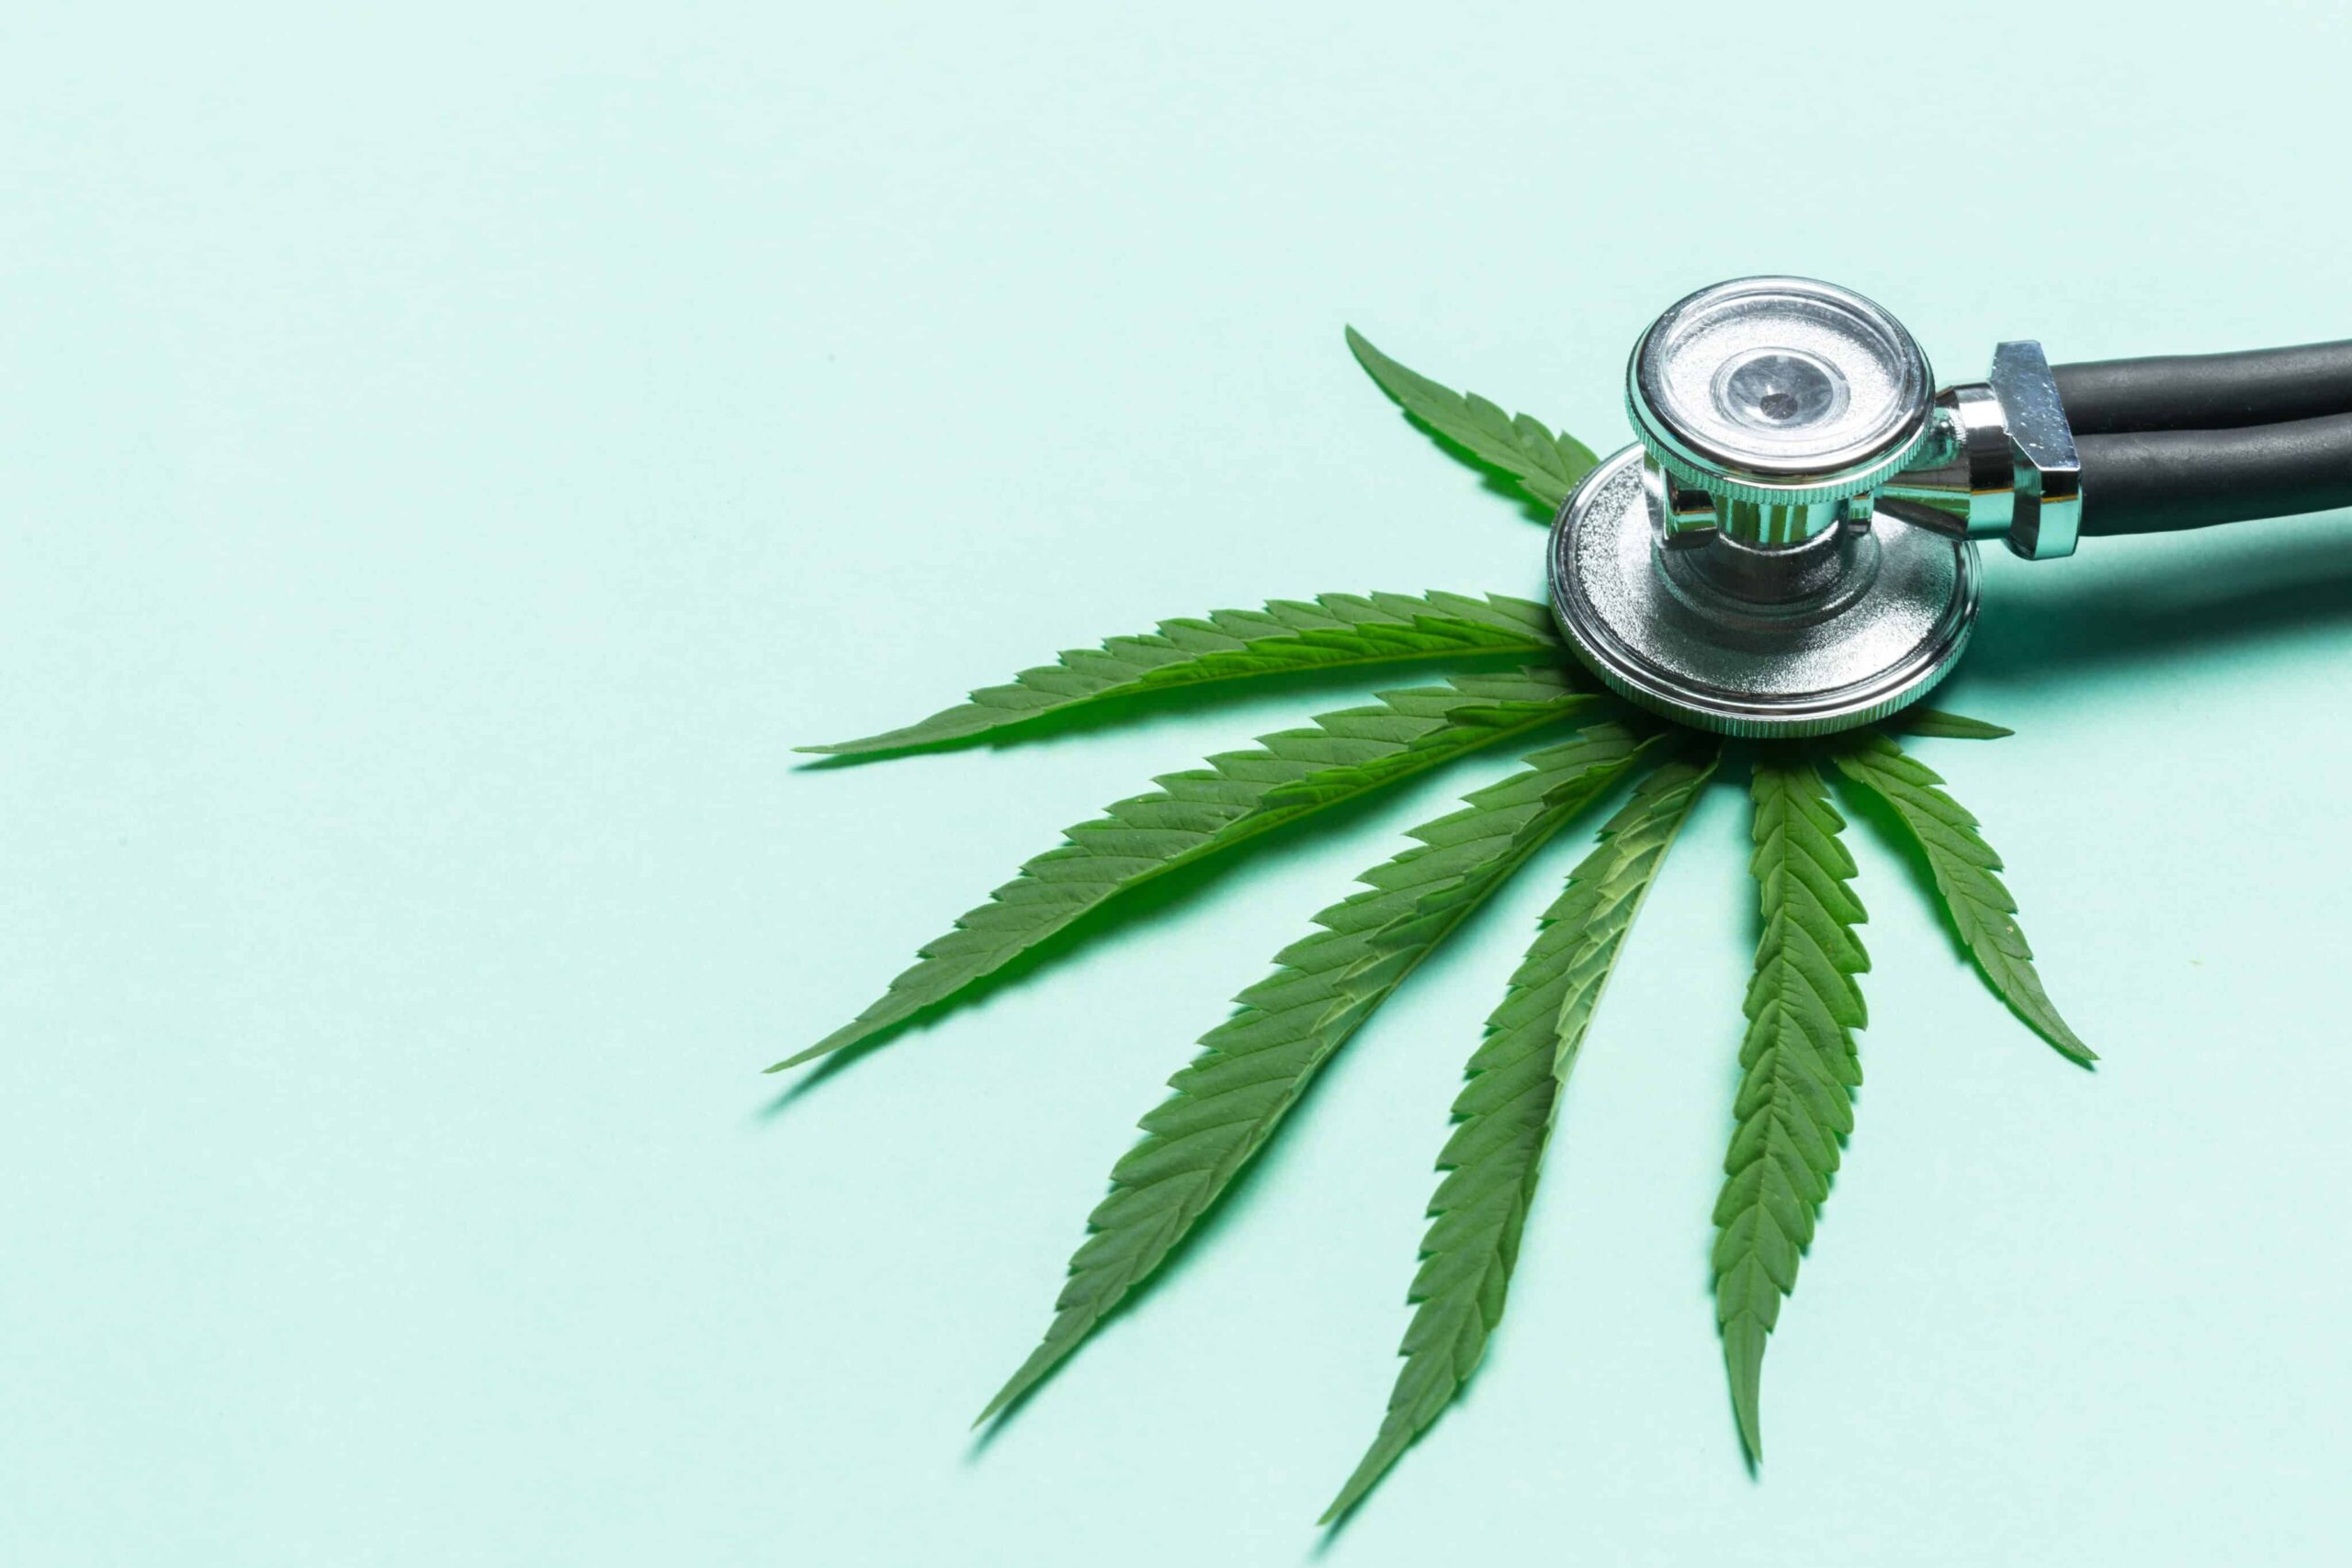 Ärzte schließen sich Aufruf zur Regulierung berauschender Hanf-Cannabinoide an